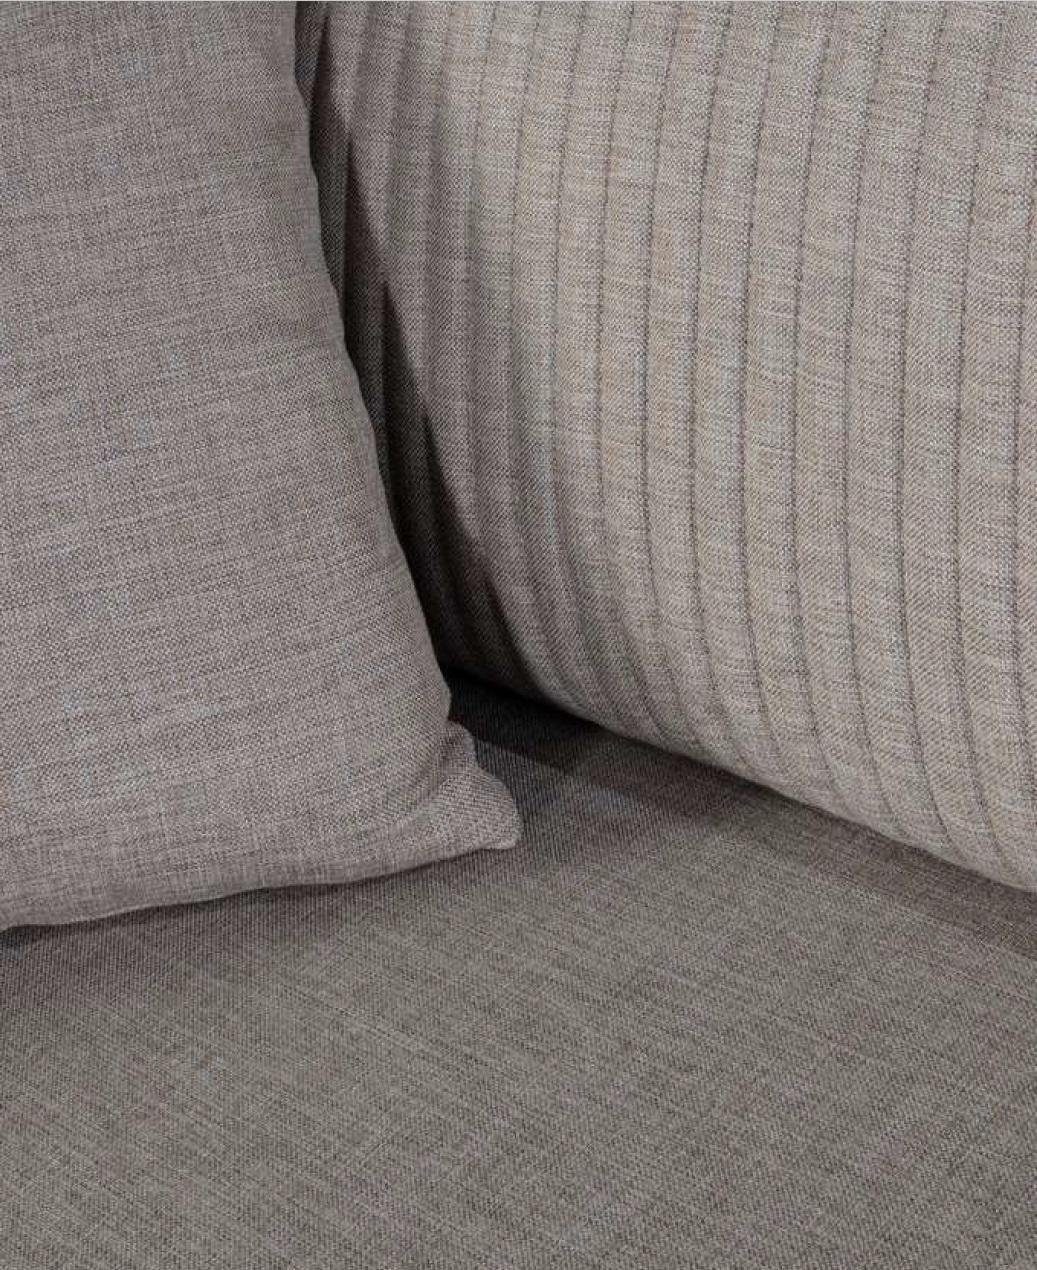 JVmoebel Sofa Designer Möbel Dreisitzer in Textil Sofa Made Grau 3 Europe Couchen Neu, Sitzer Luxus